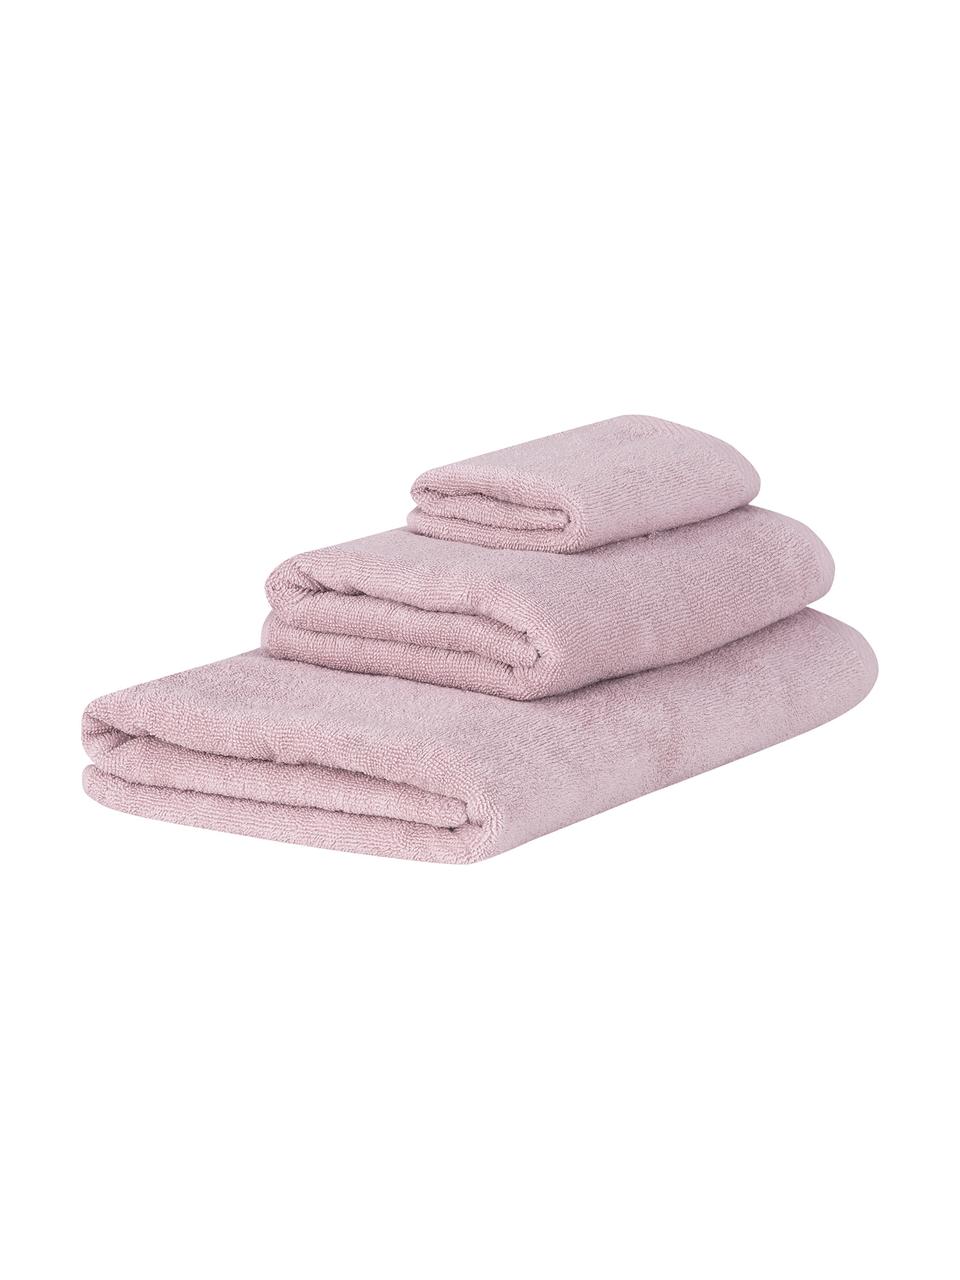 Lot de serviettes de bain unicolore Comfort, 3 élém., 100 % coton
Grammage intermédiaire 450 g/m², Vieux rose, Lot de différentes tailles